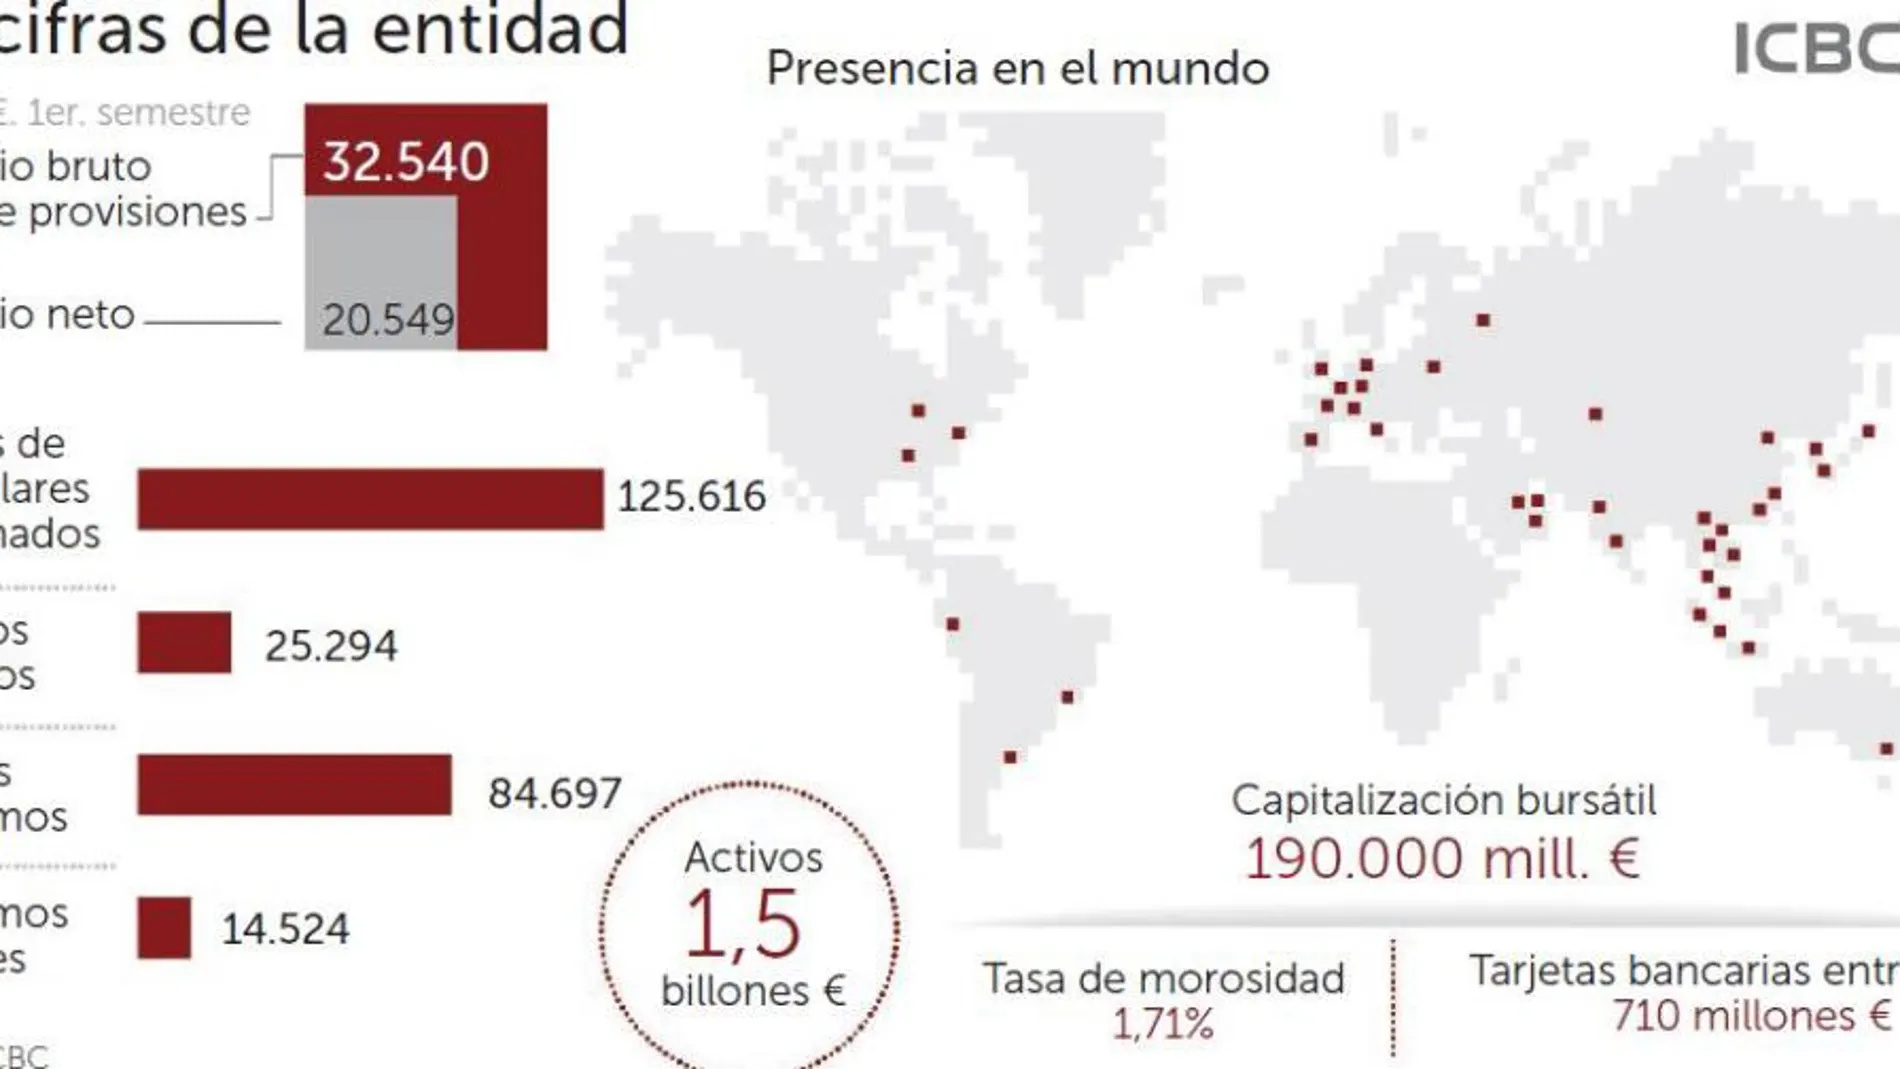 Un gigante con 1,5 billones de activos en el mundo que aterrizó en España en plena crisis